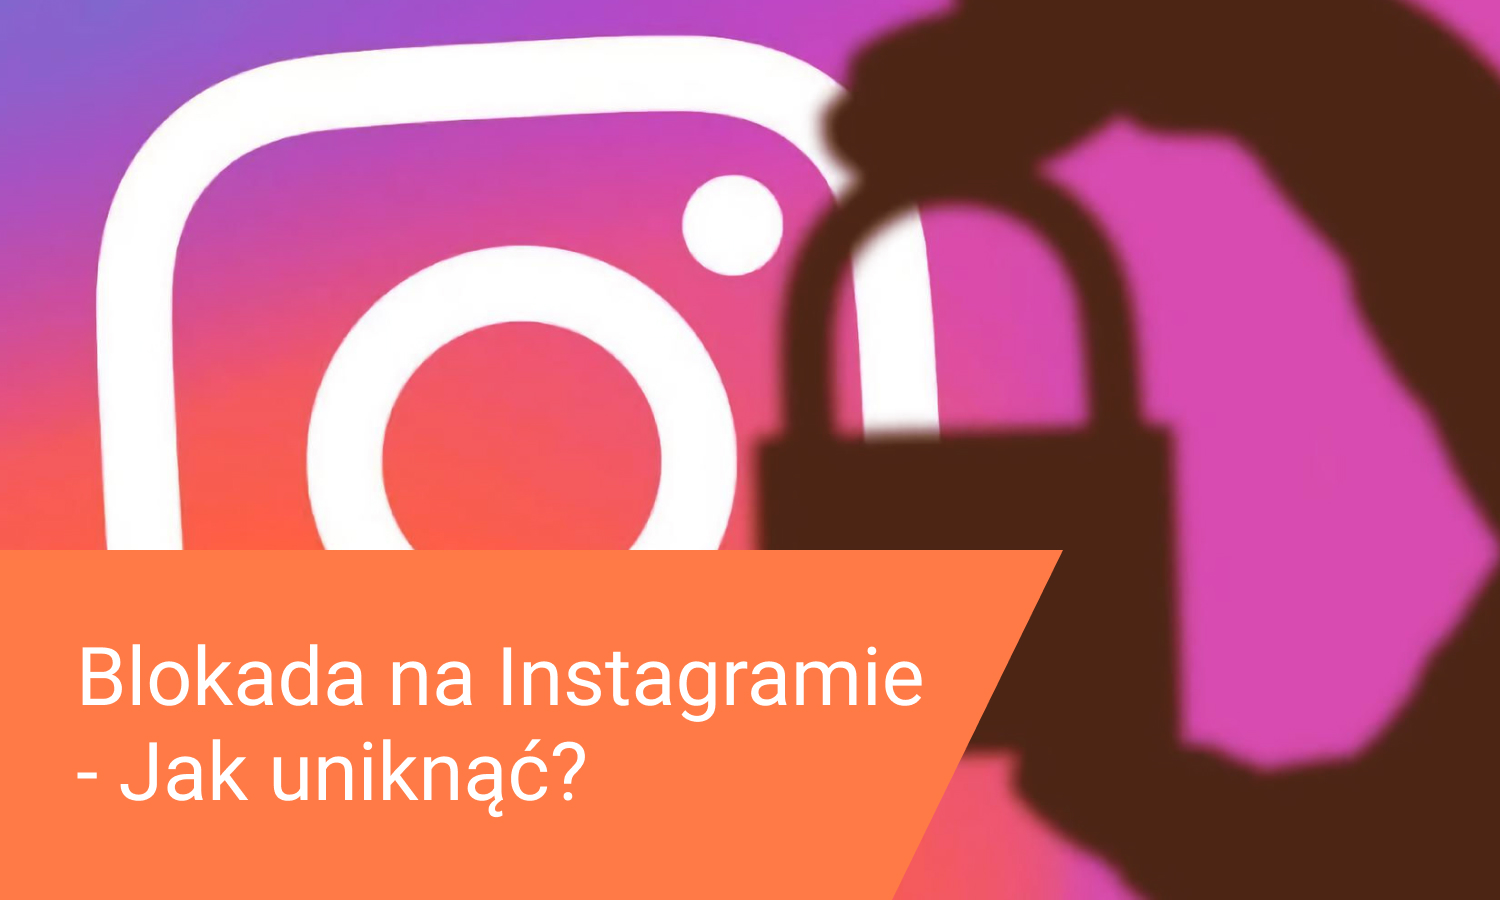 Blokada na Instagramie – Jak jej uniknąć?